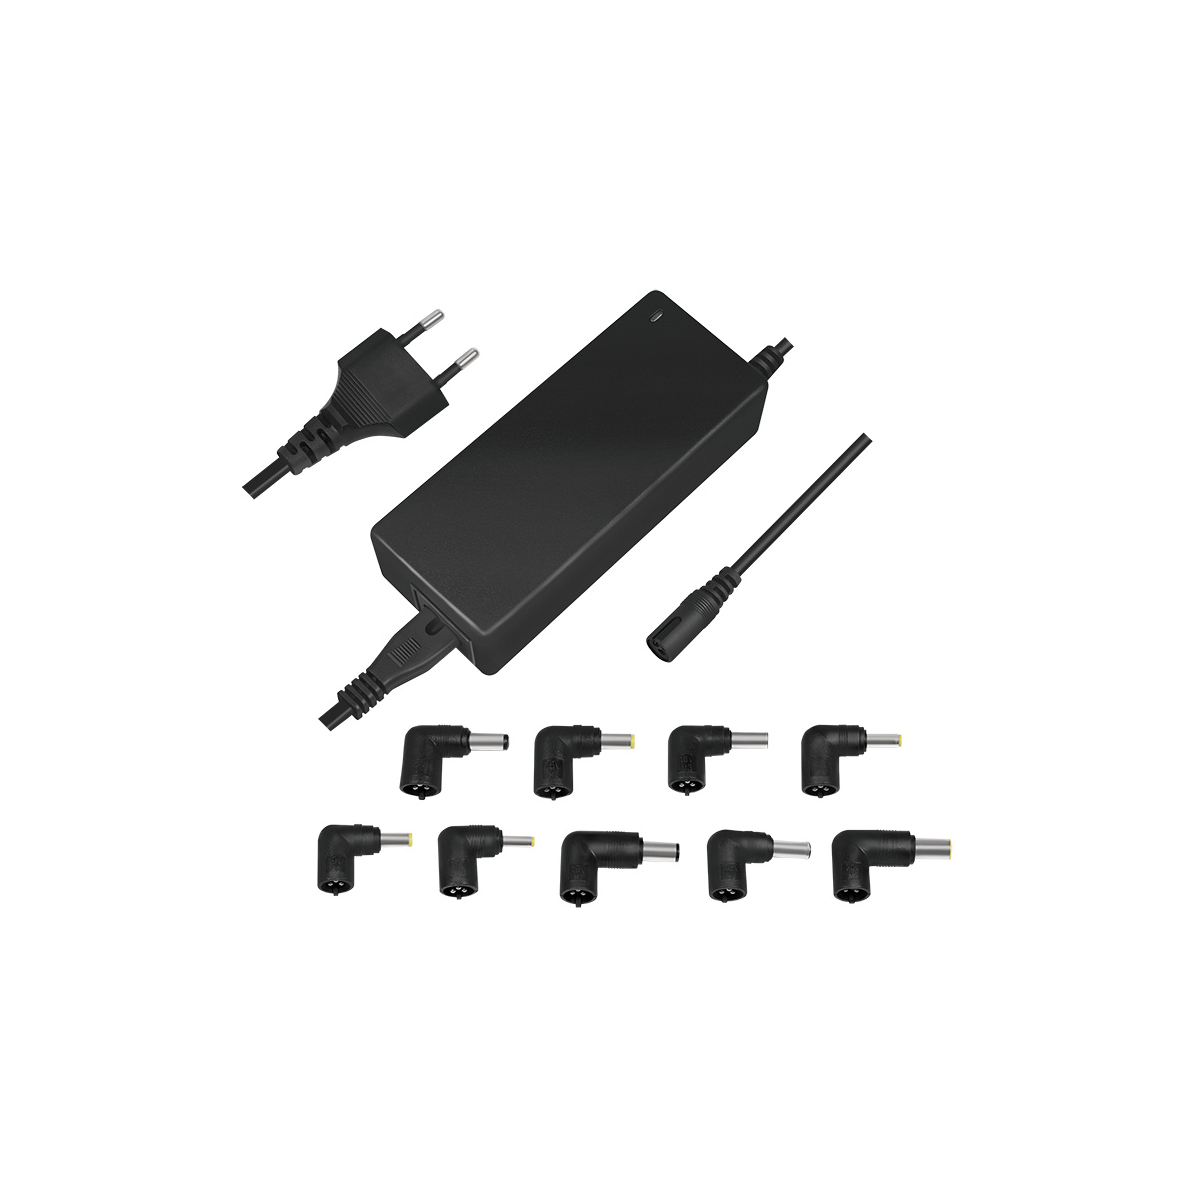 LOGILINK PROFESSIONAL für schwarz Notebooks Watt, schwarz Universal, Stecker-Netzteile, Notebook, Netzteil 90 Universal